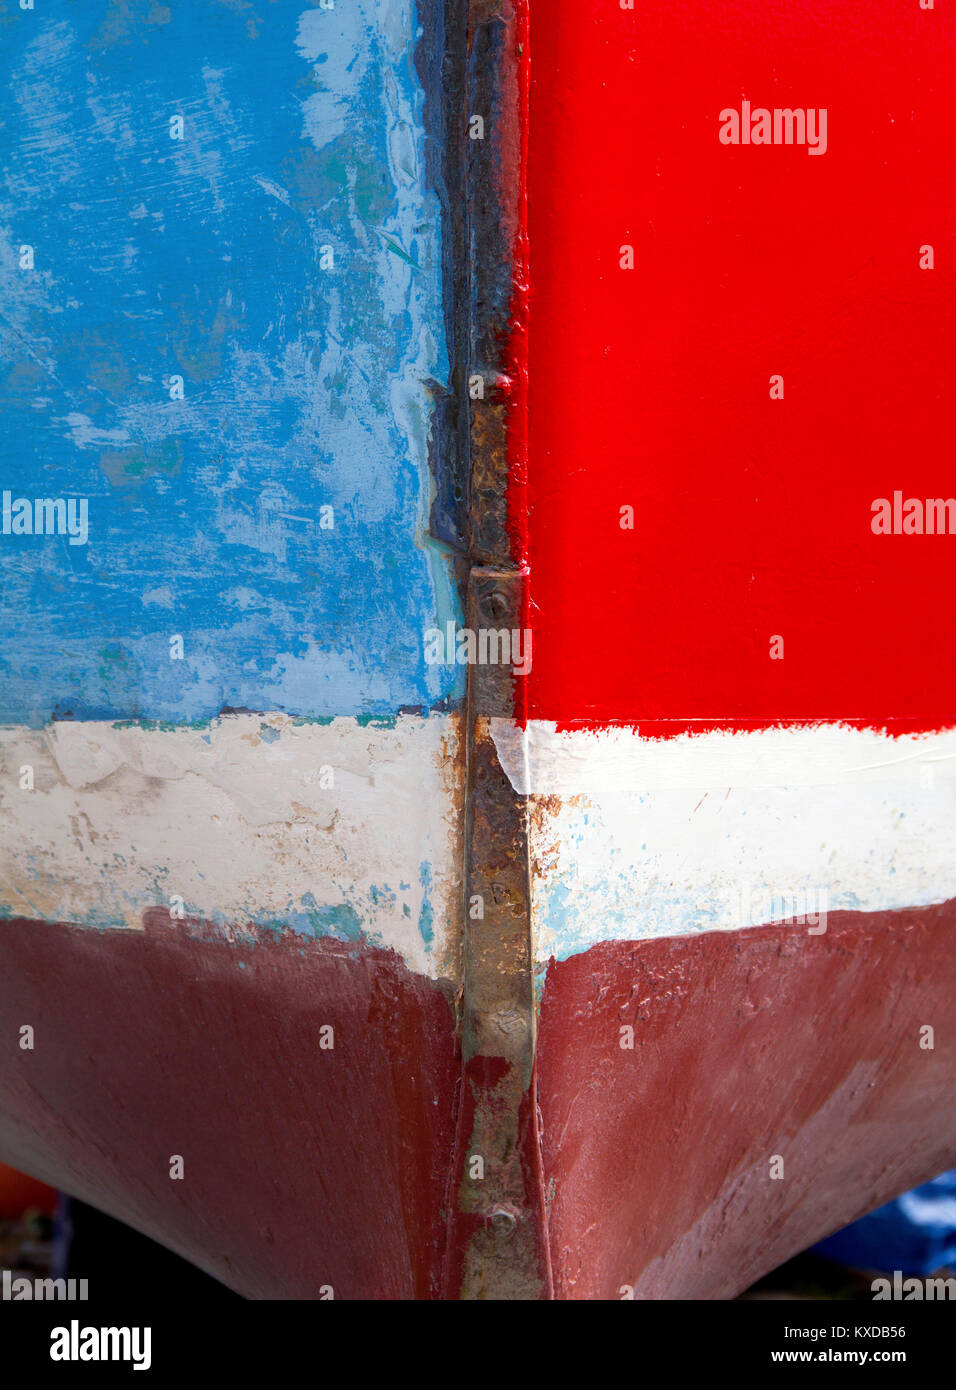 Una visión abstracta de la proa de un barco, pintados en bloques de diferentes colores. Foto de stock